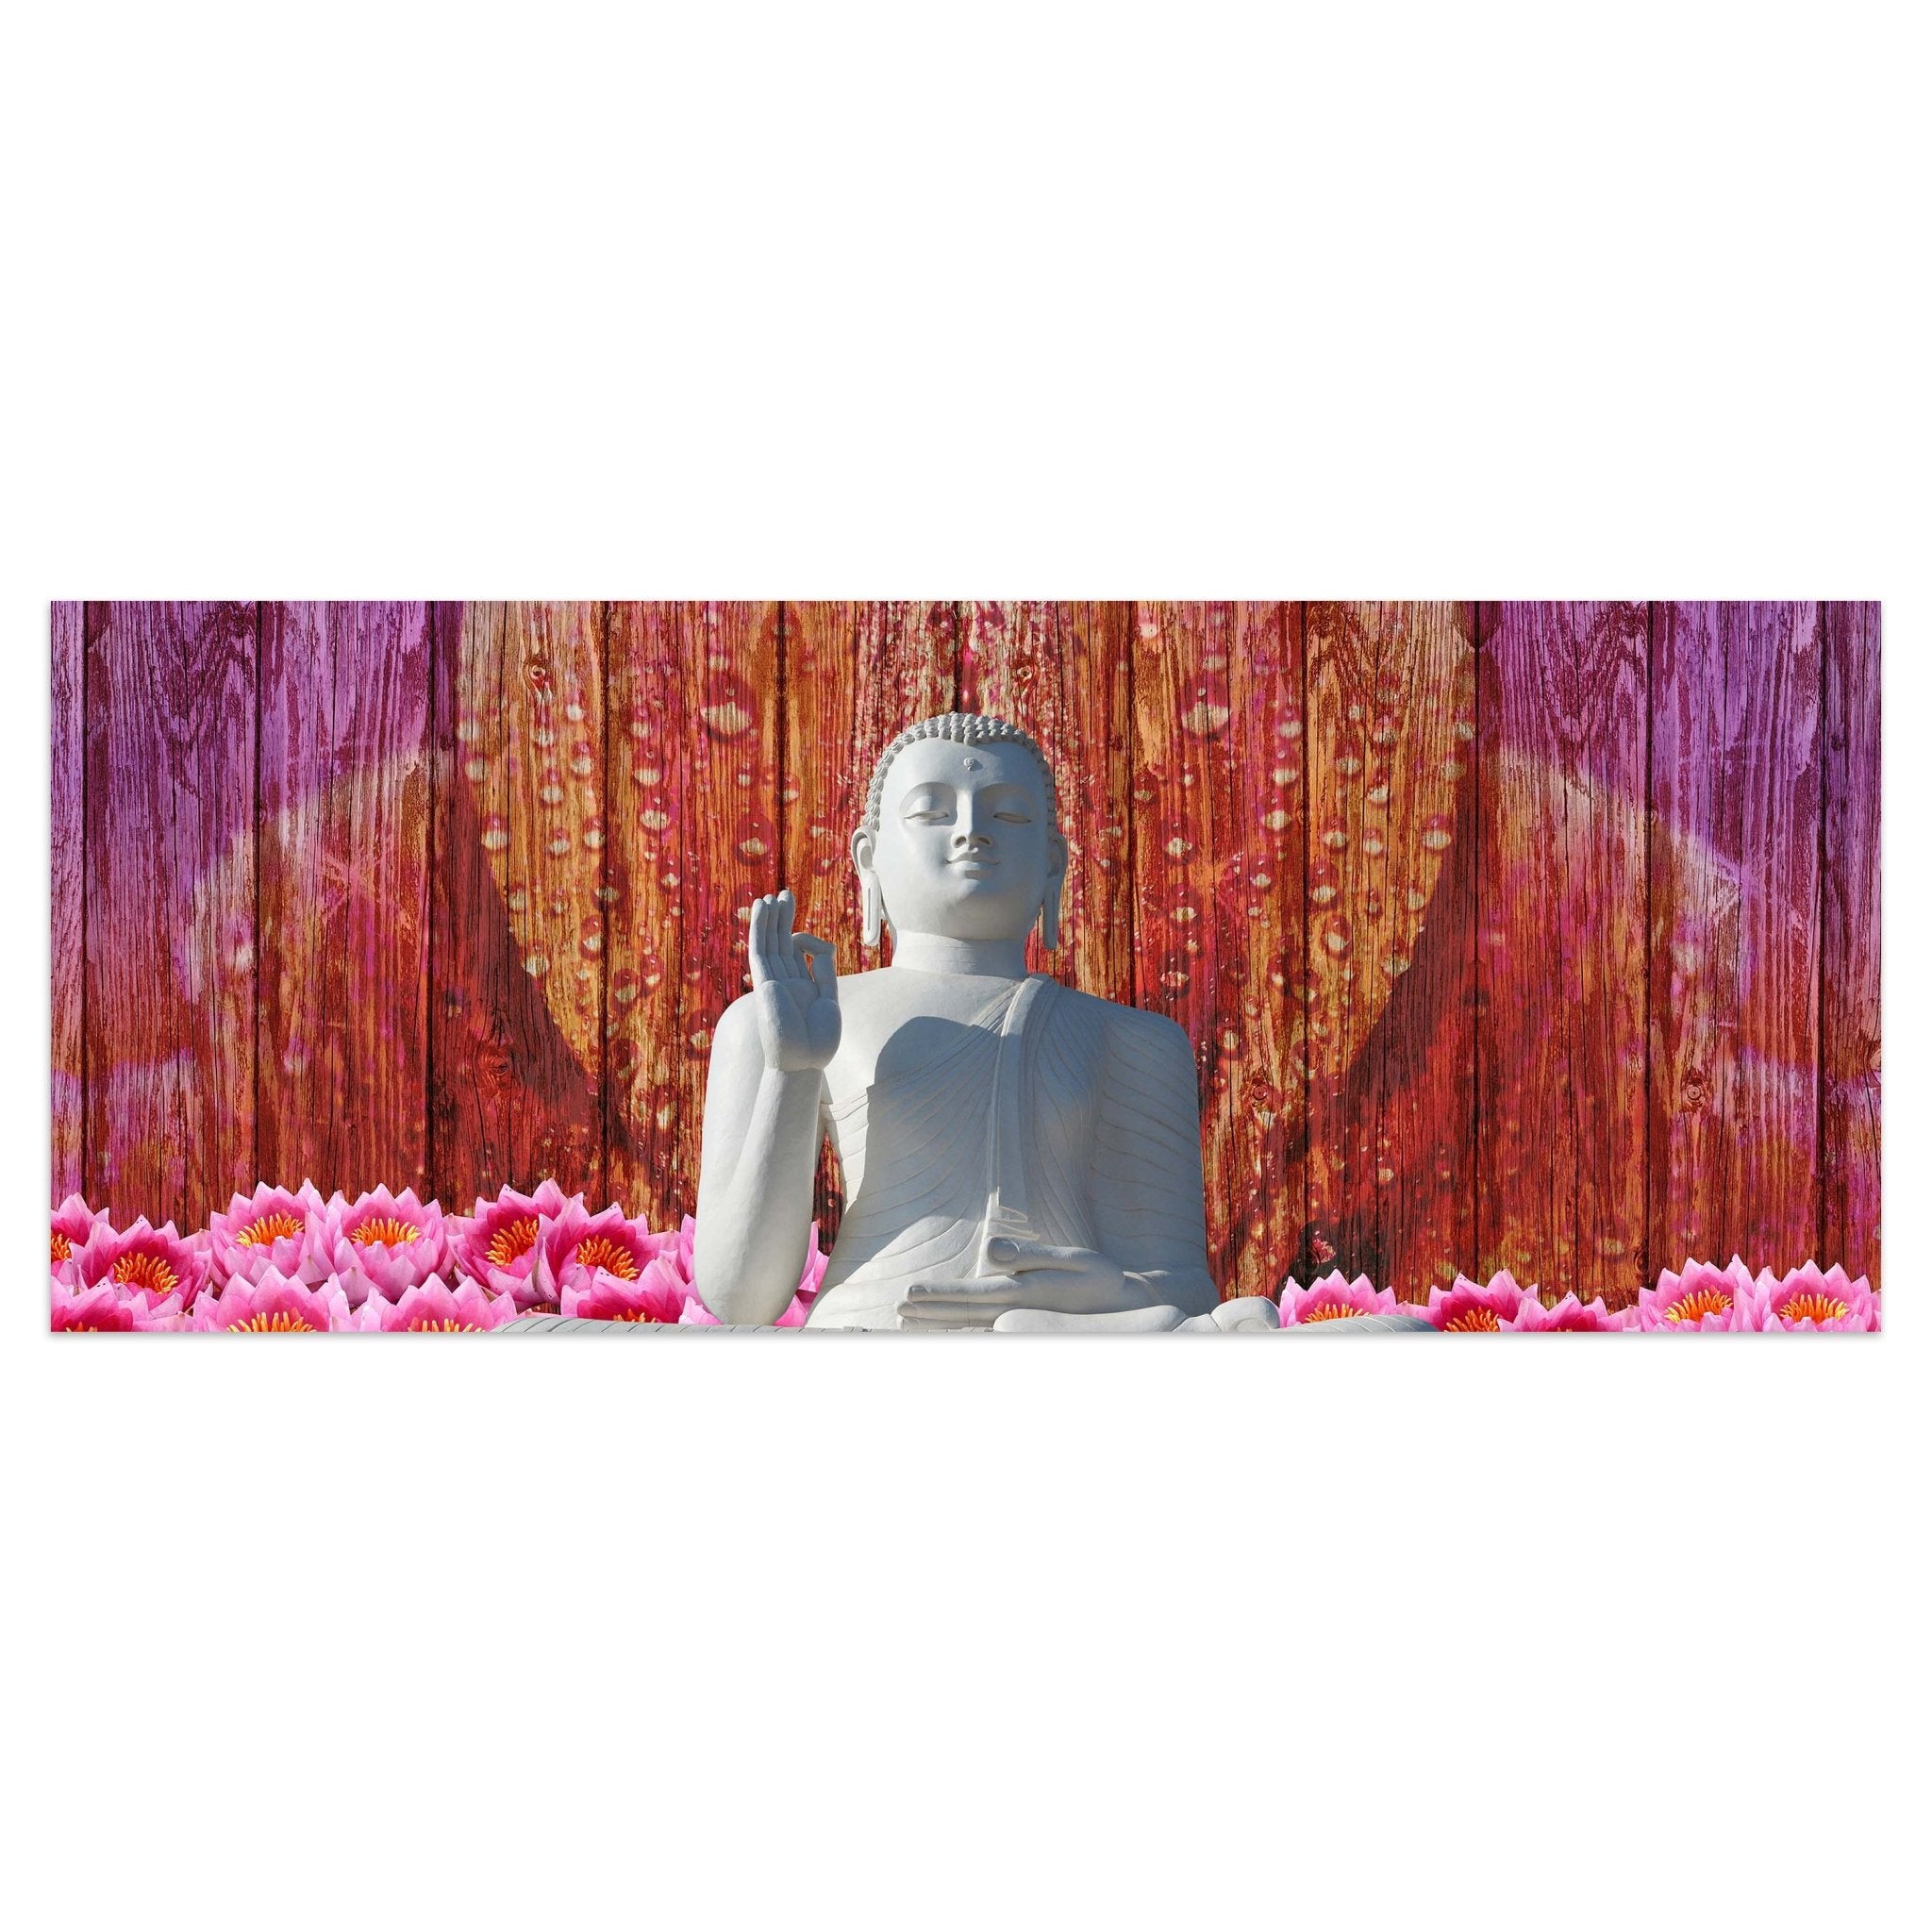 Leinwandbild Weiß Sitzende Buddha-Statue M0688 kaufen - Bild 1